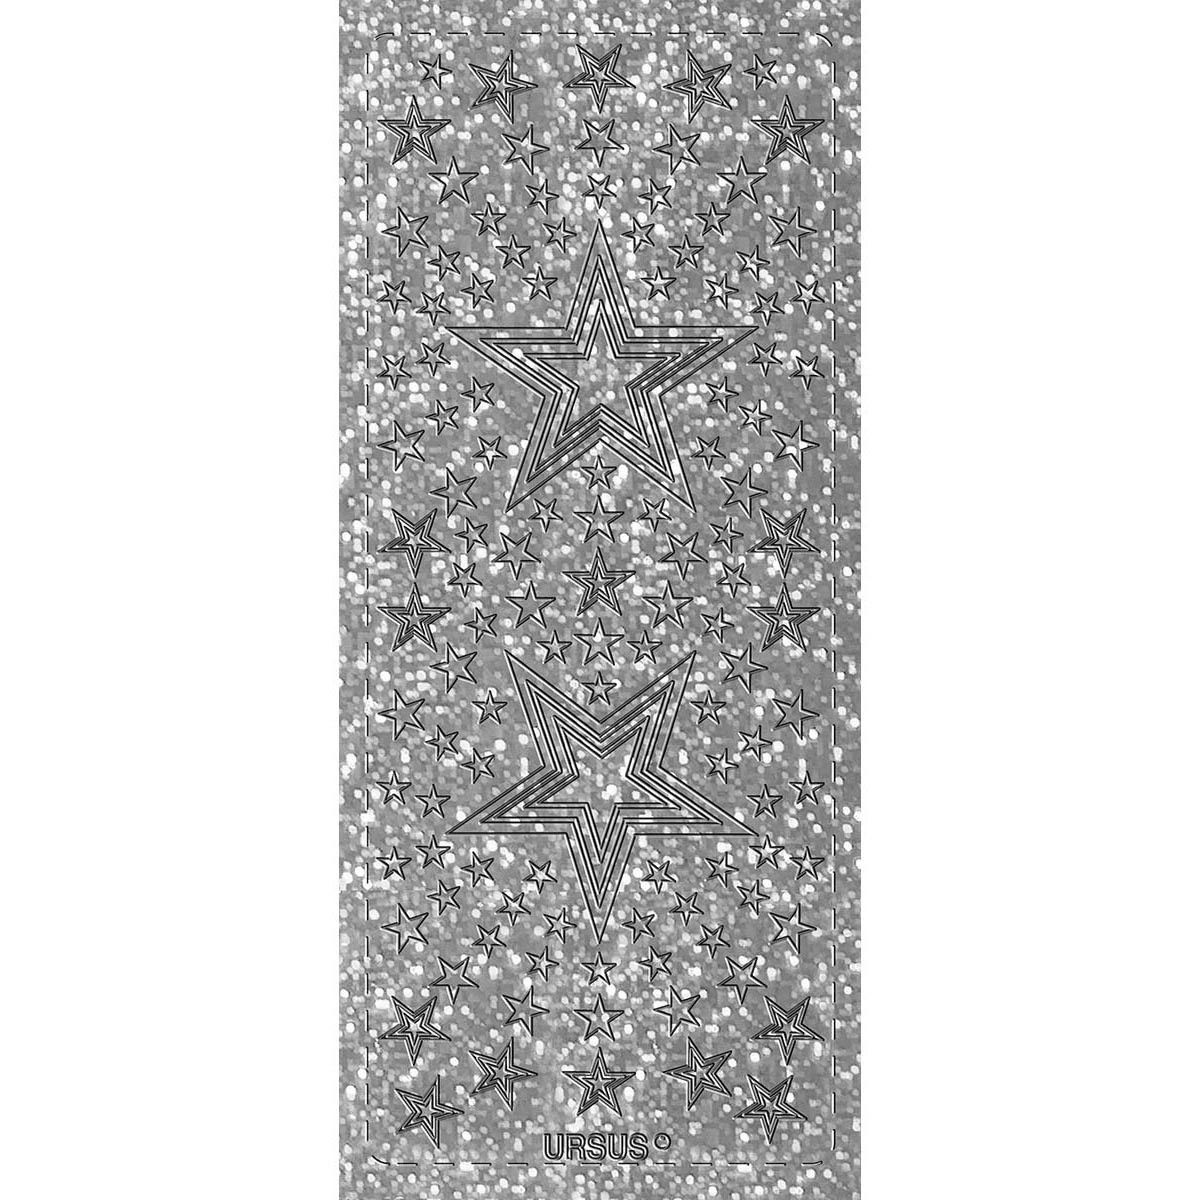  Silber Hintergrundbild 1200x1200. Hologramm Sticker Sterne 4 silber